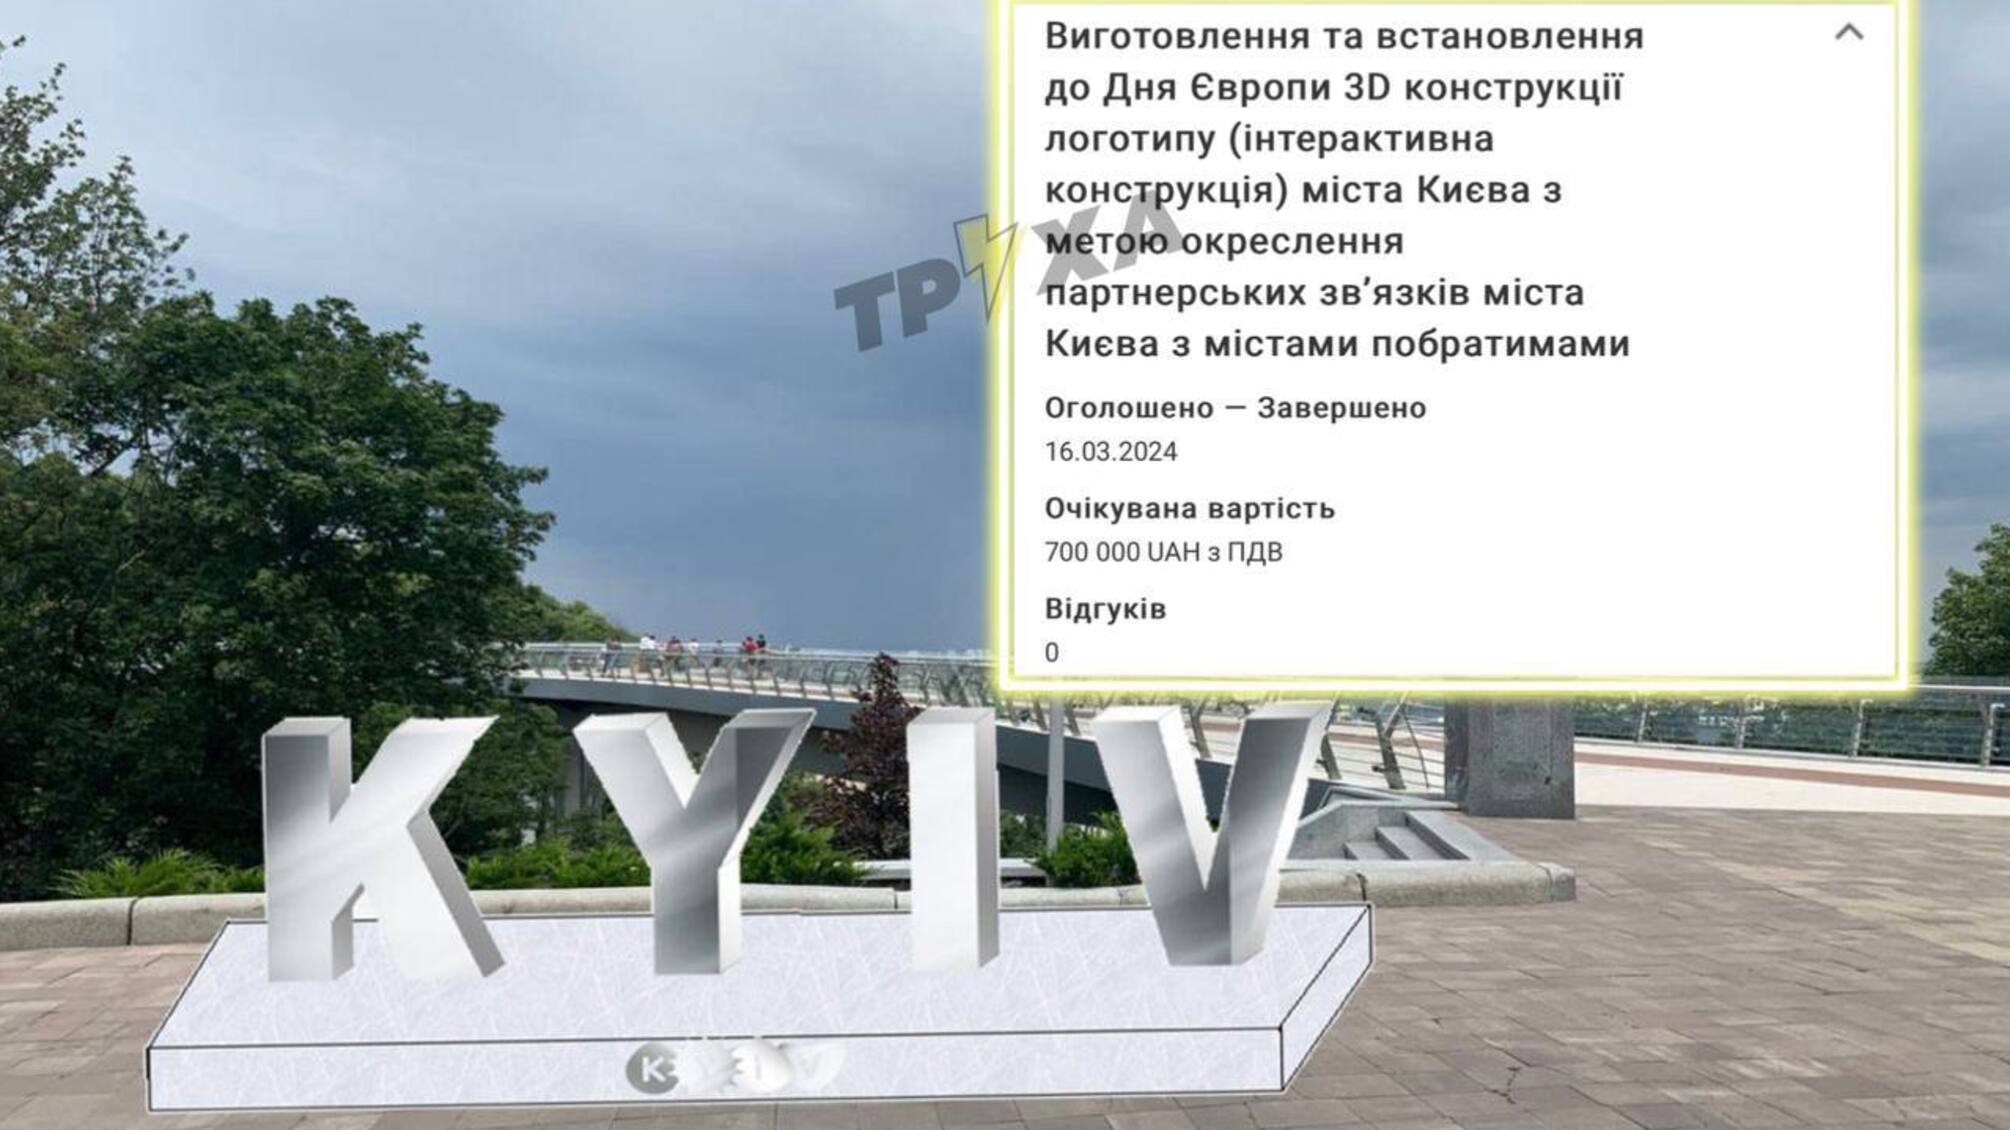 В Киеве планируют установить 3D-конструкцию логотипа за 700 тыс. грн